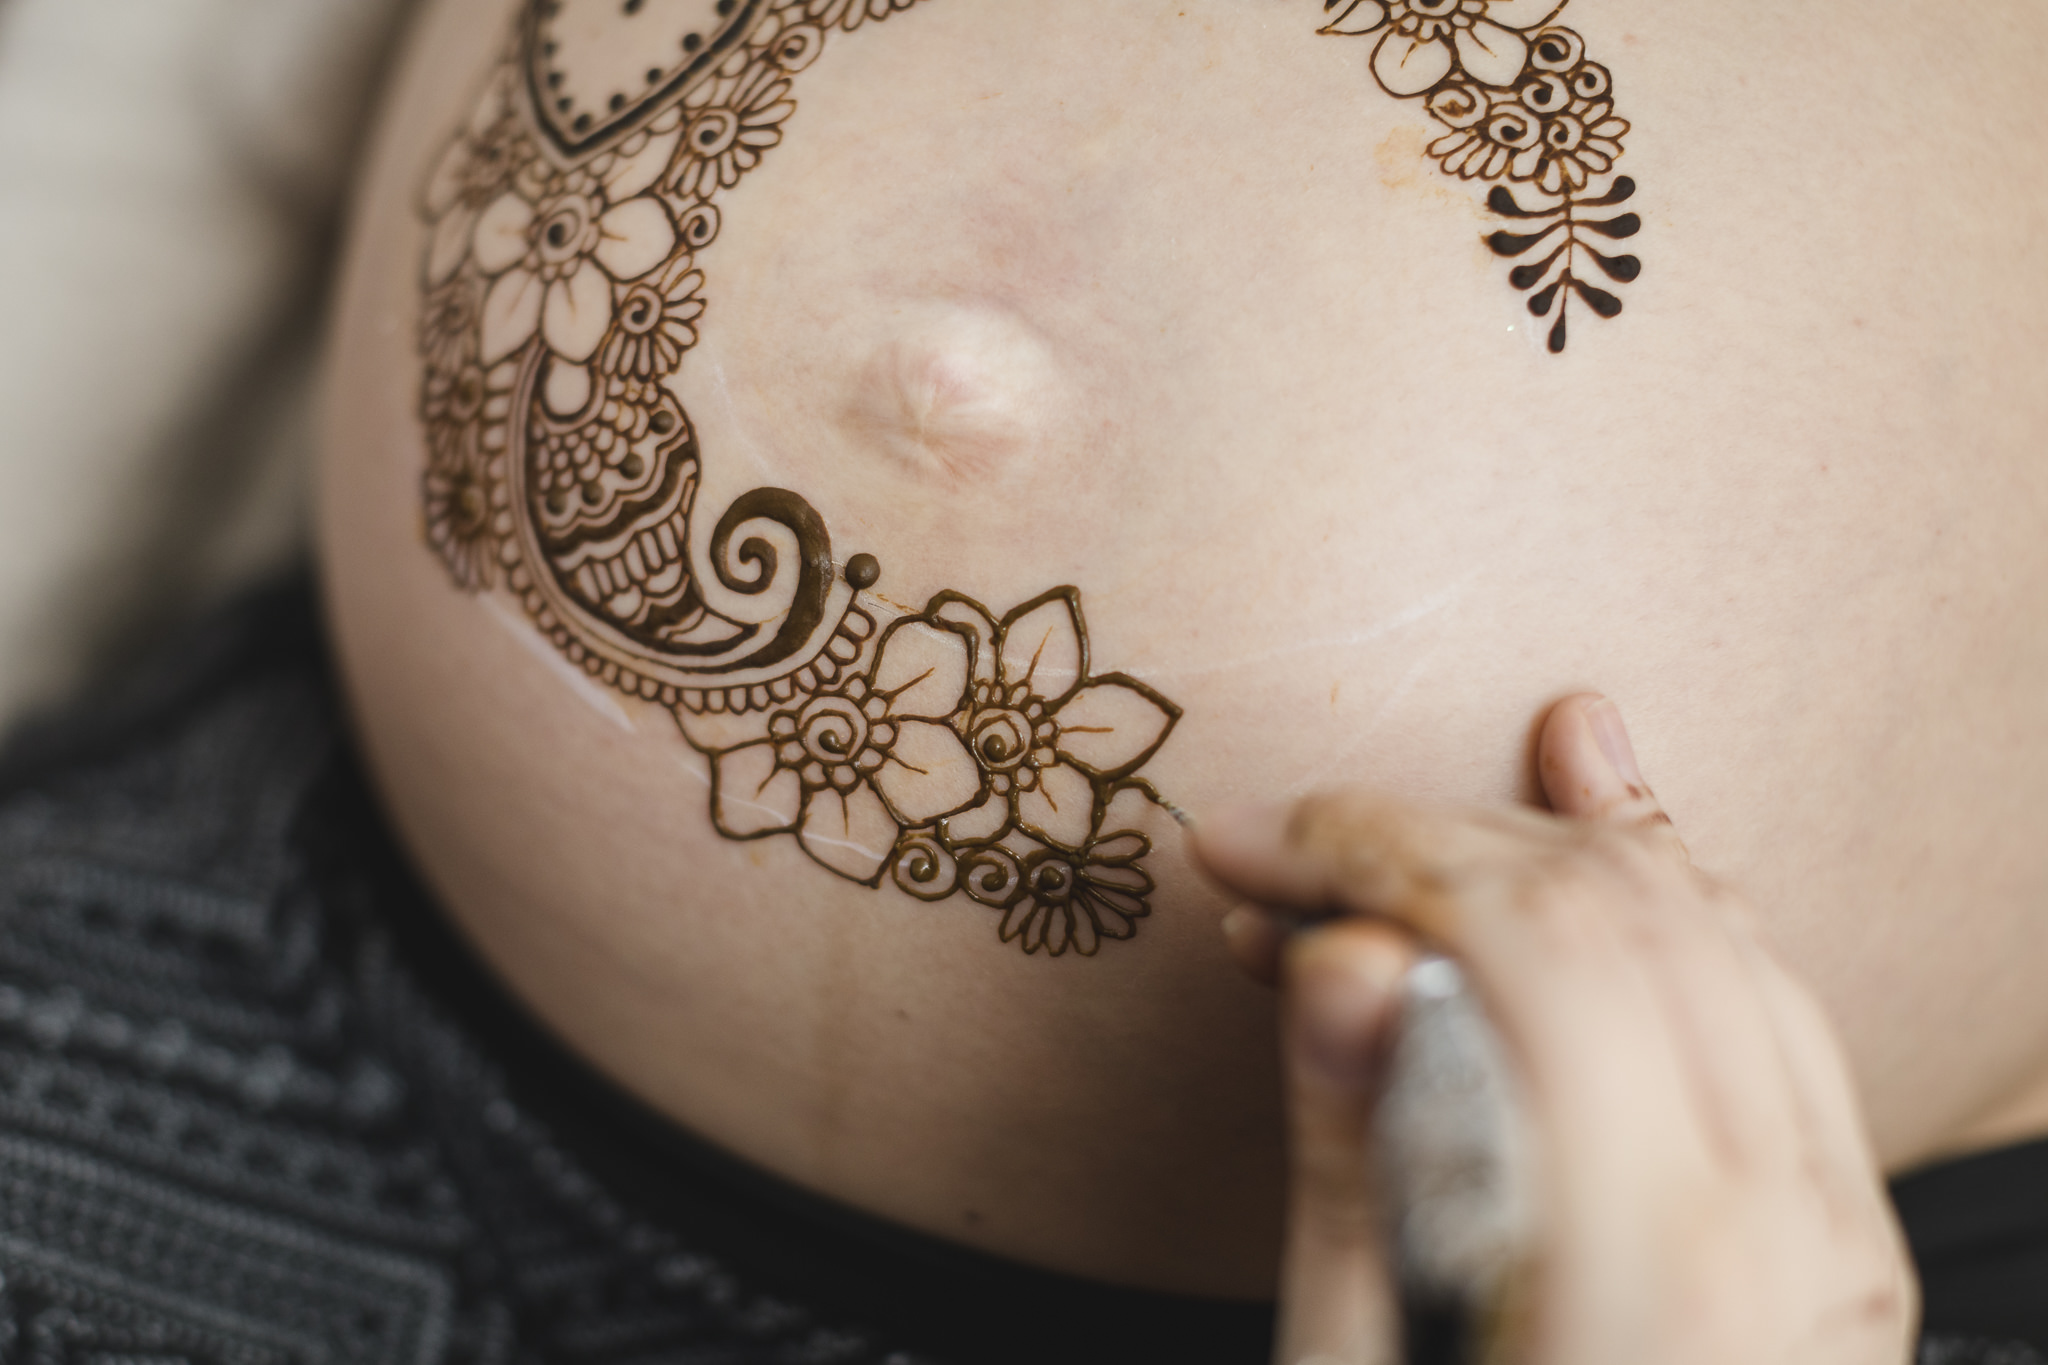 Babybauchsshooting mit Henna - Das Henna Tattoo besteht aus vielen kleinen Details